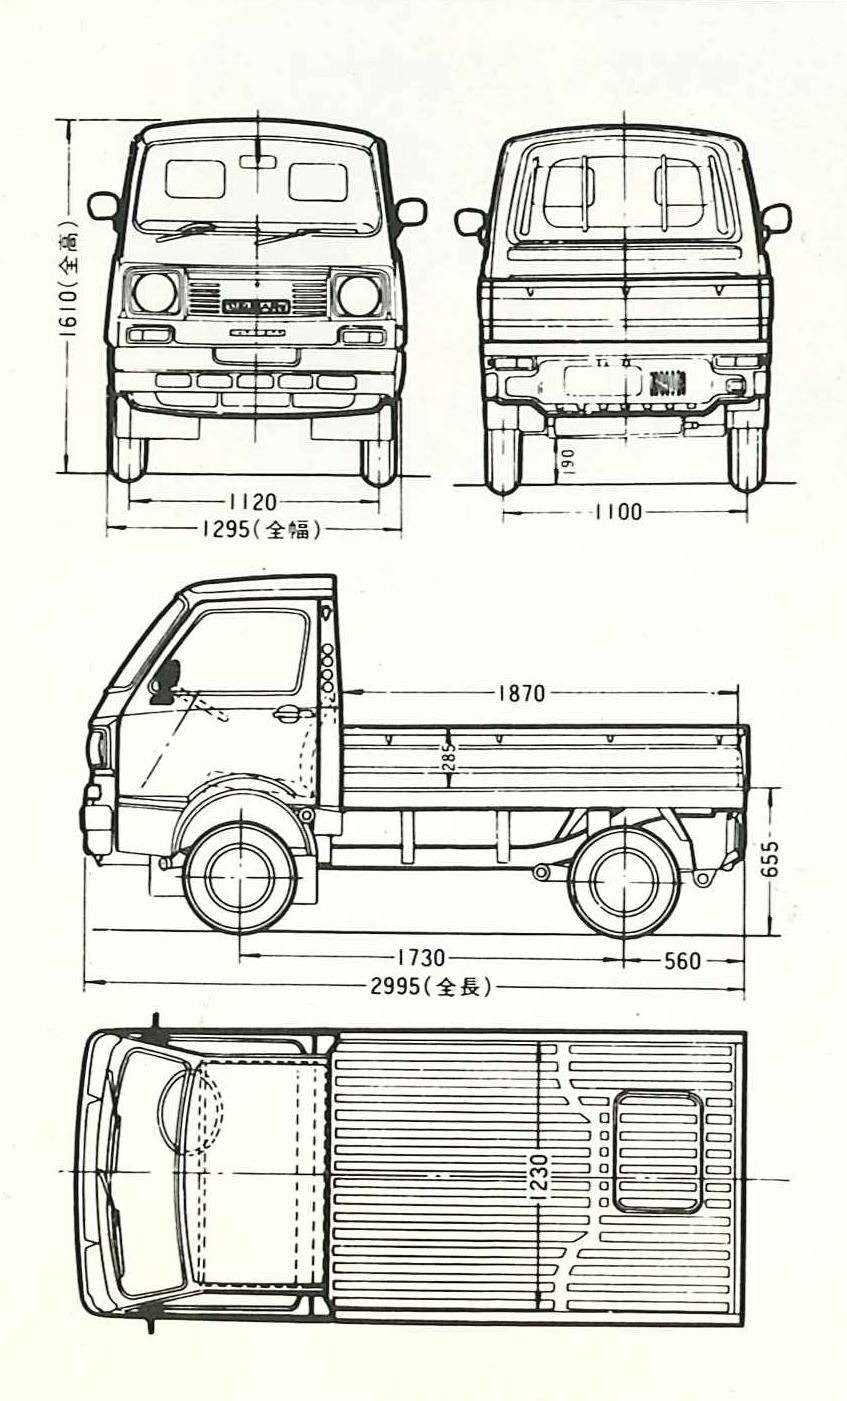 Subaru Sambar blueprint